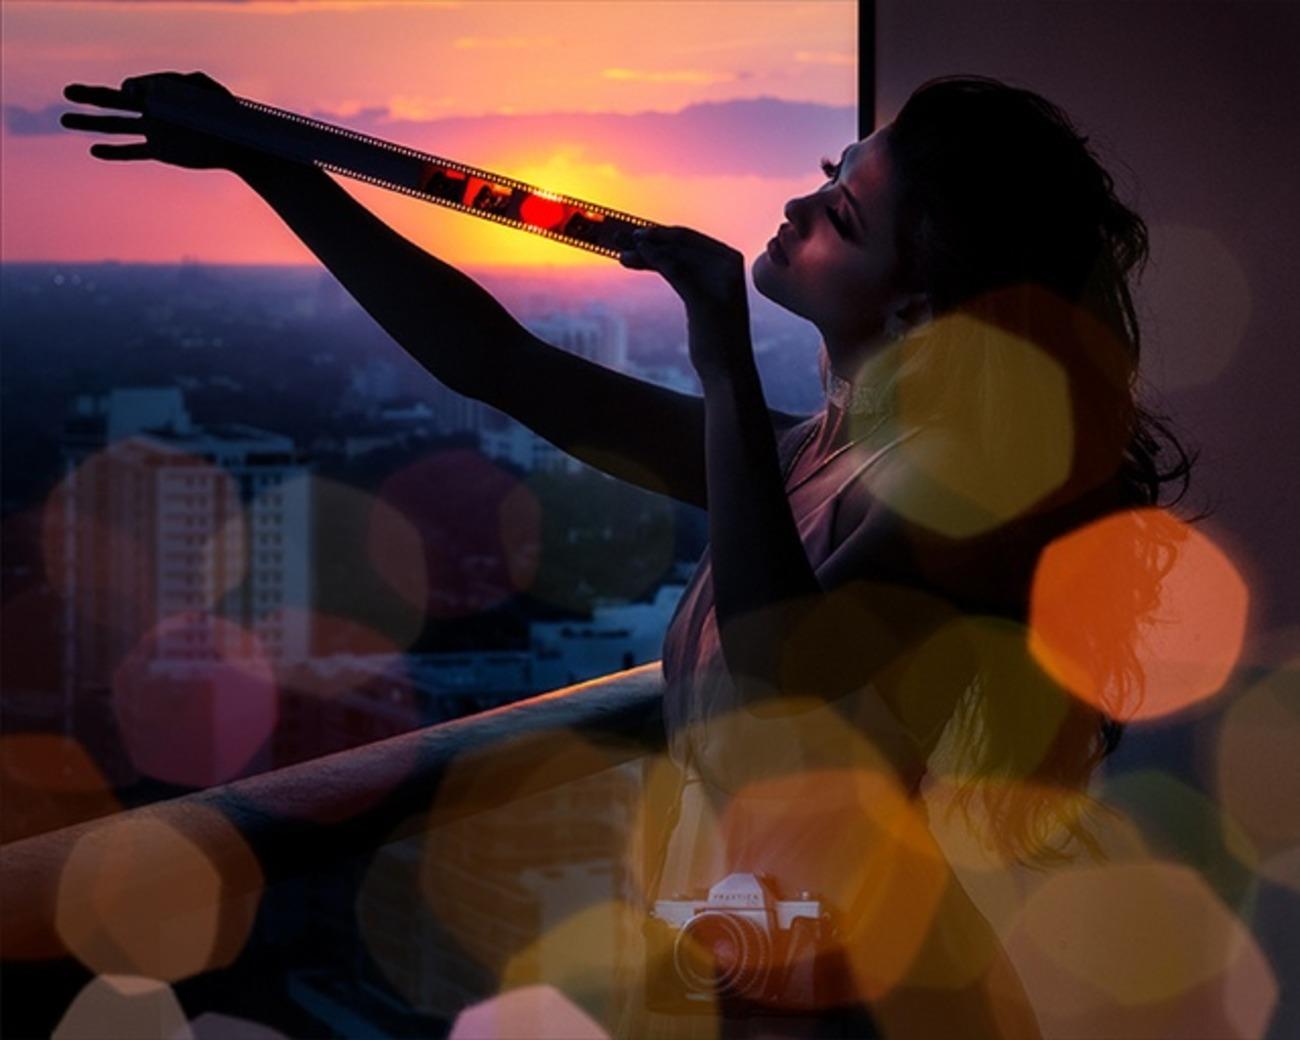 David Drebin - Photographie « Sunset Lover » 2019, imprimée après